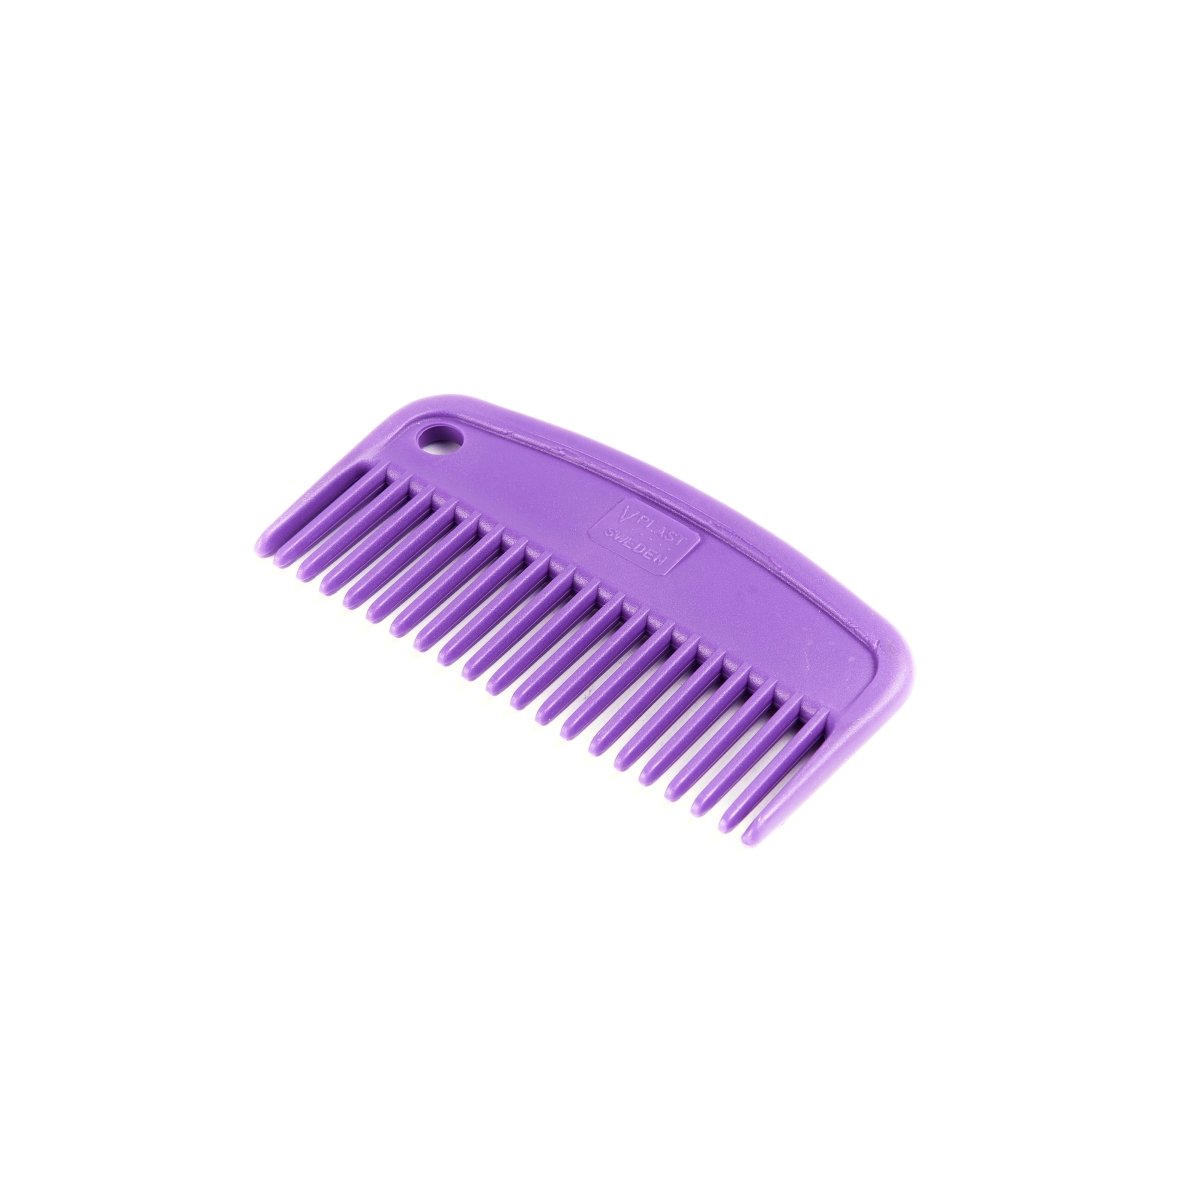 EZI-GROOM Plastic Mane Comb - Small - Purple -